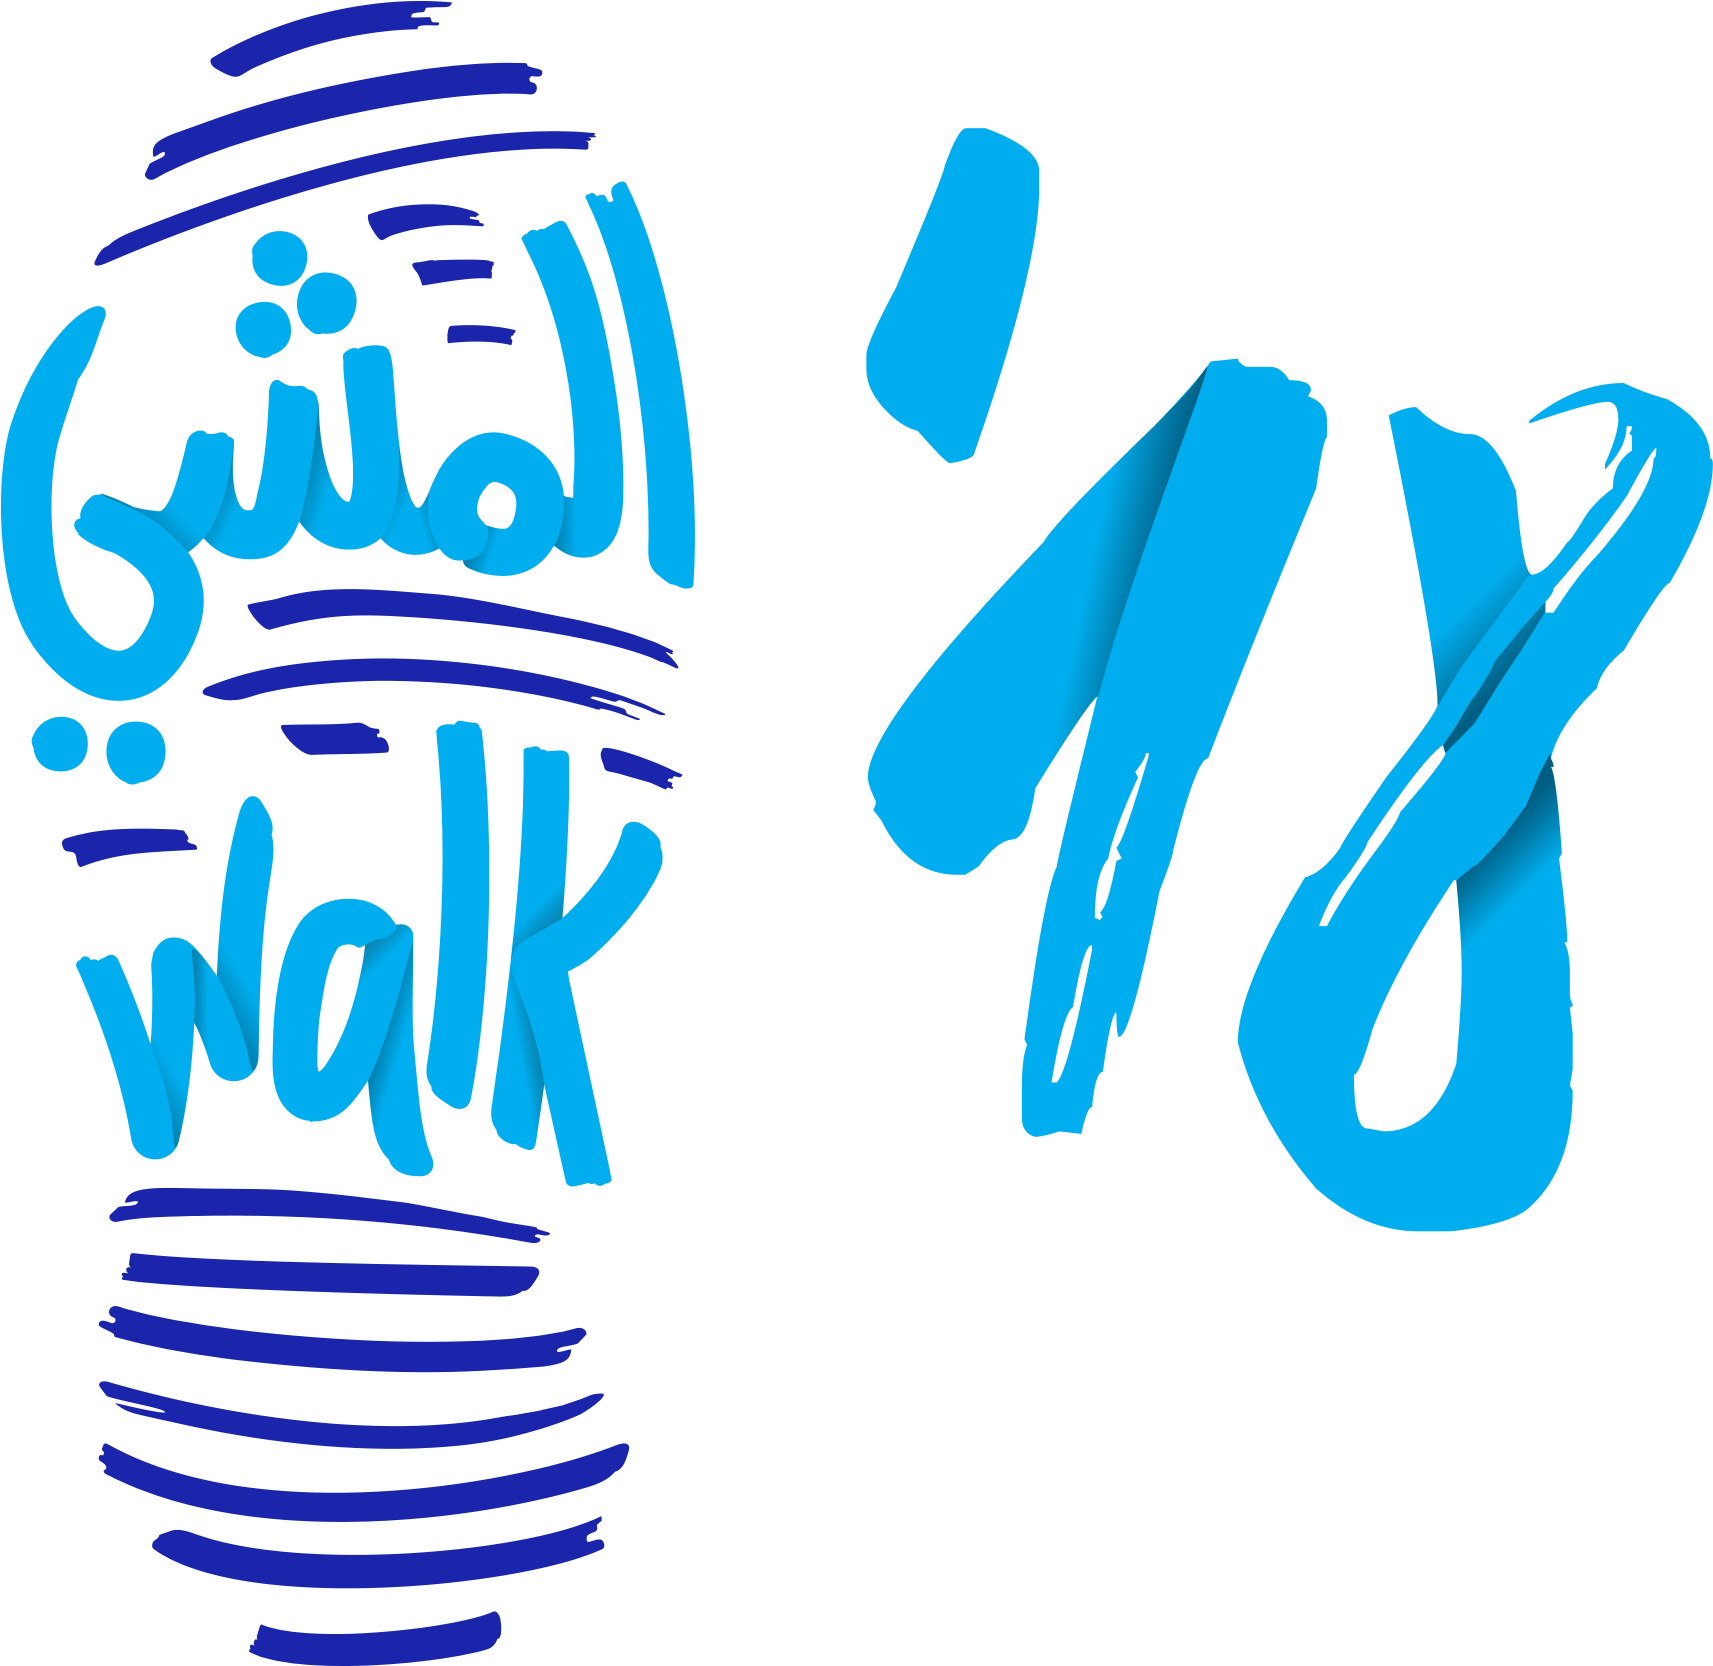 Walk - Diabetes Walk 2018 Abu Dhabi (1731x1675)